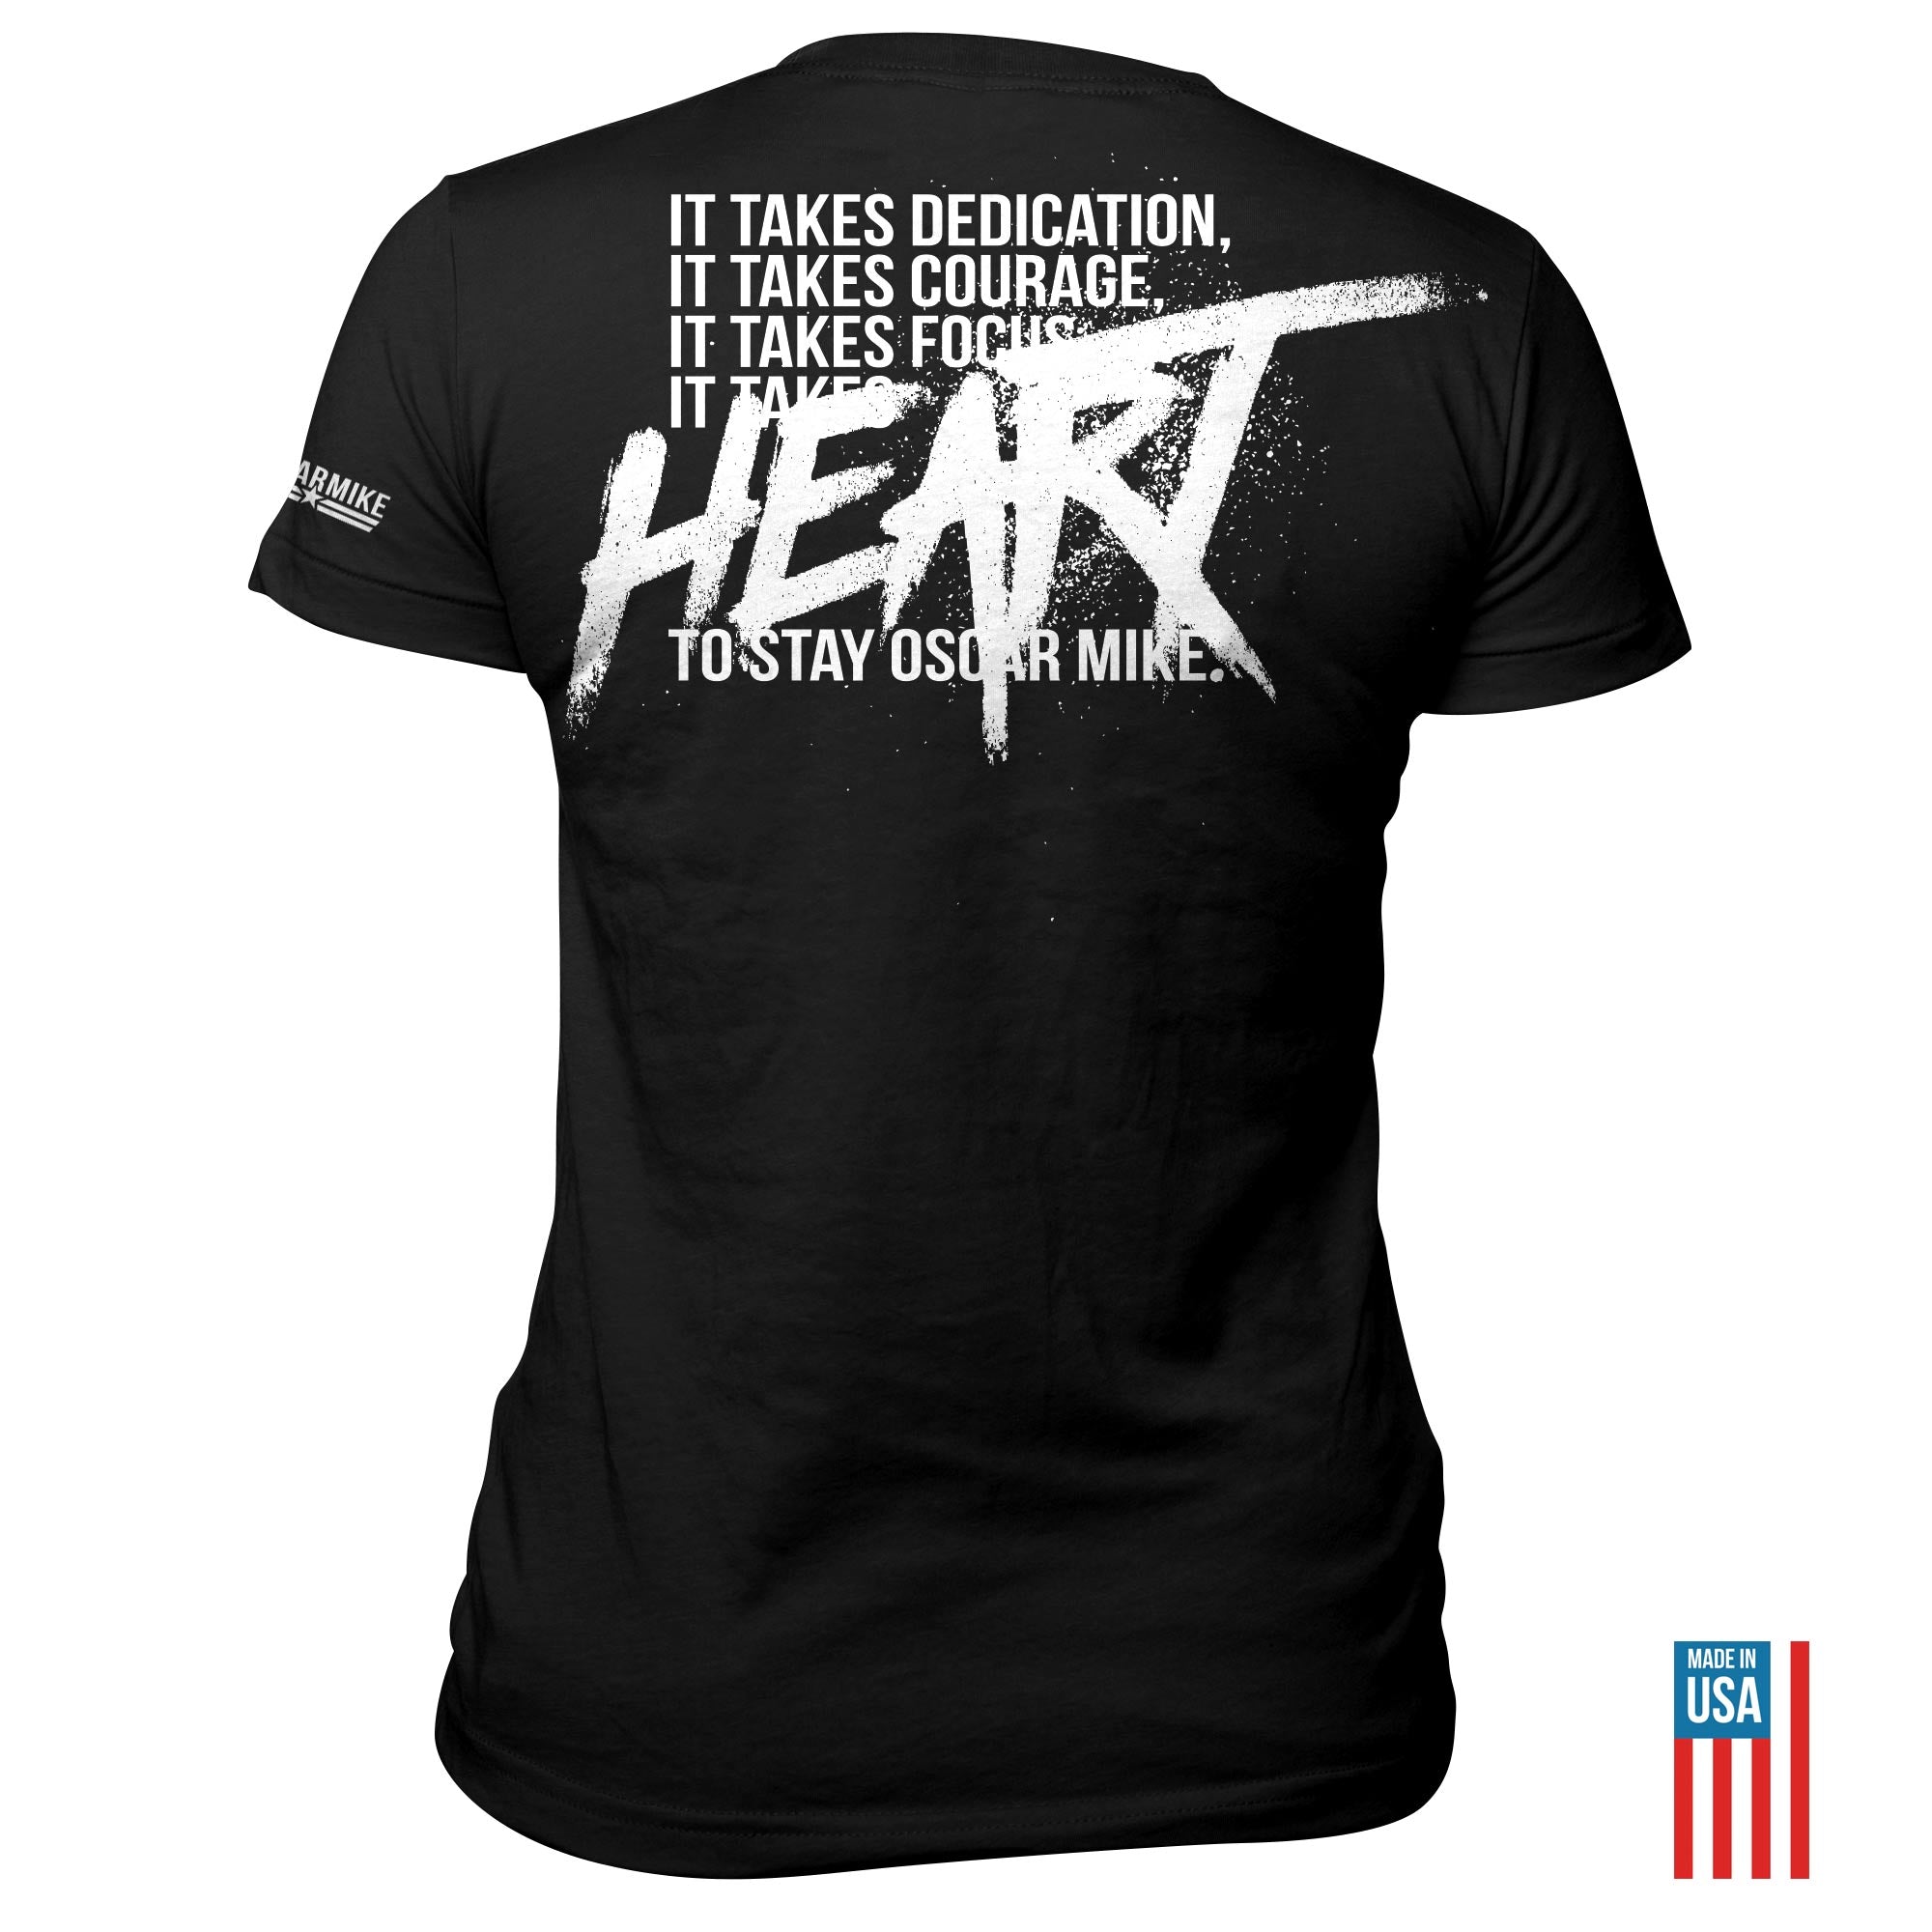 Women's Heart Tee T-Shirt from Oscar Mike Apparel